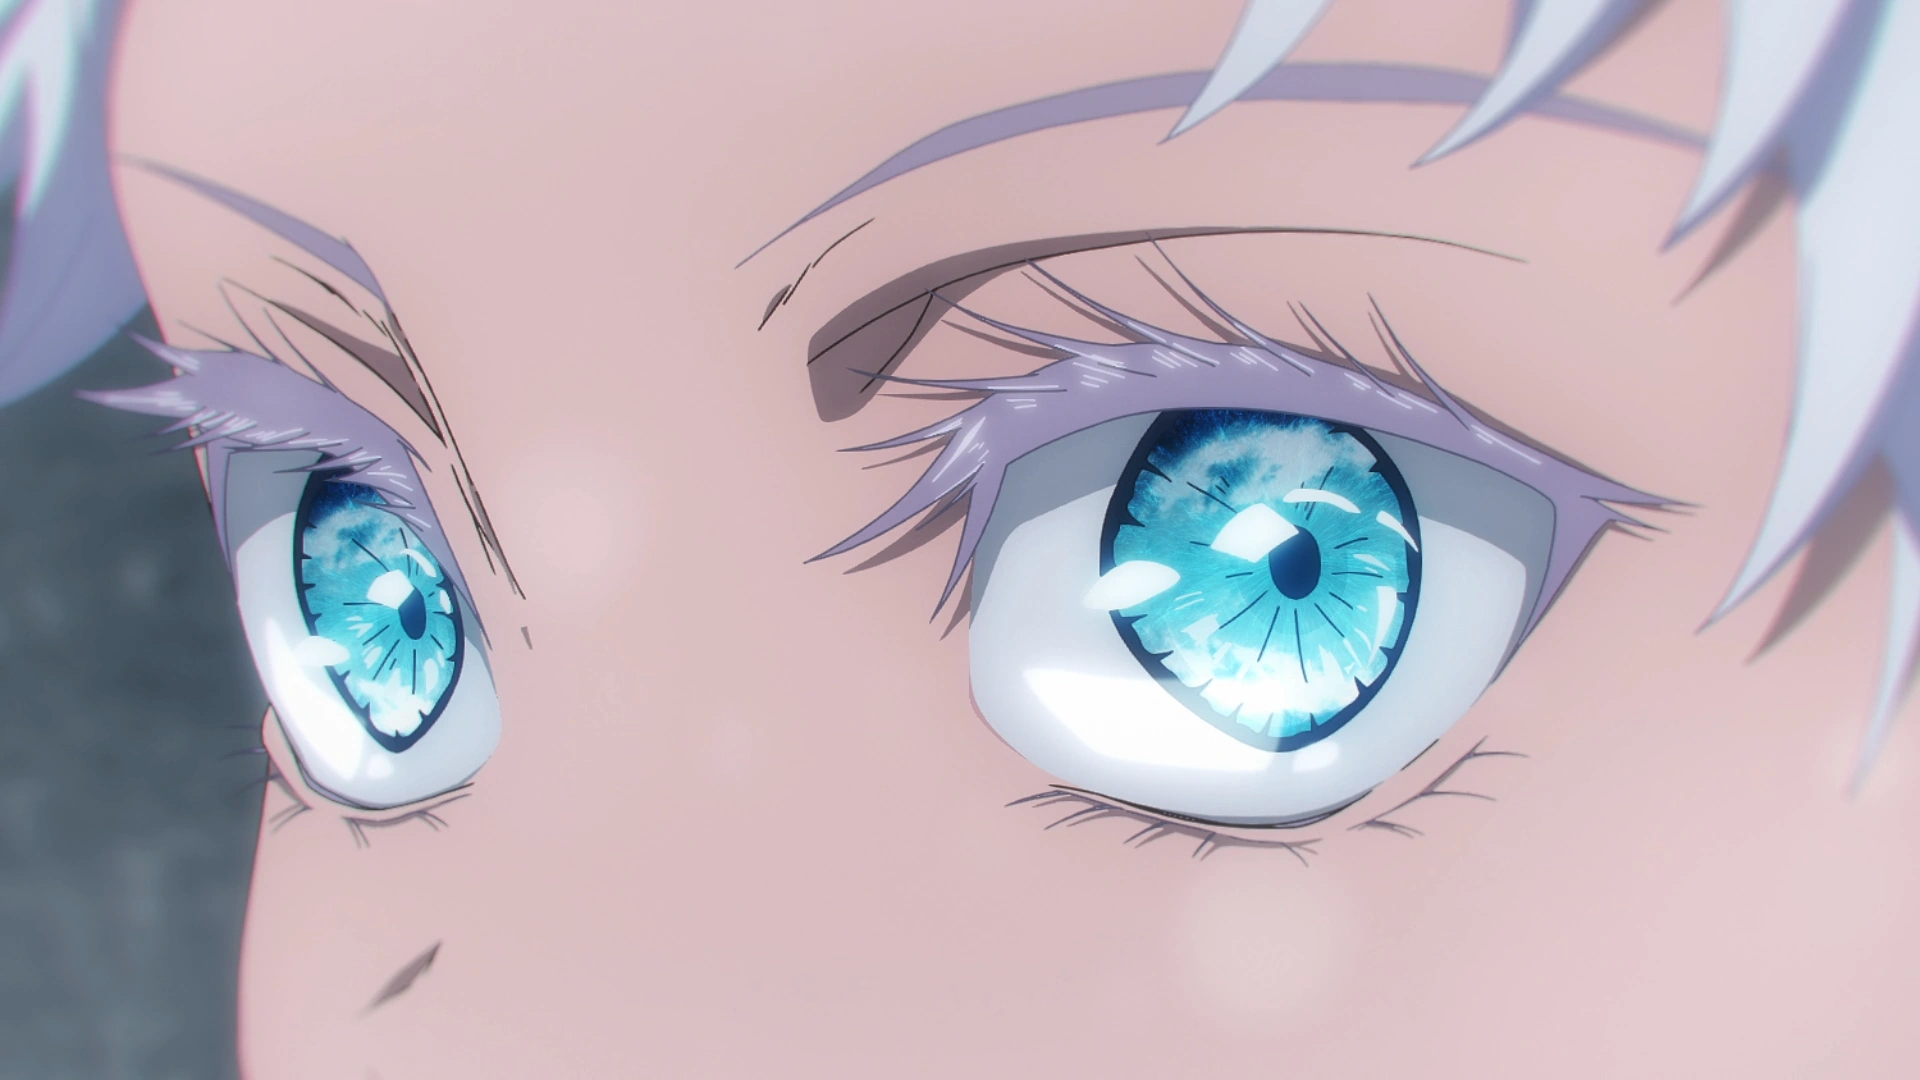 Goju (Six Eyes) - Gojo, Anime Adventures Wiki